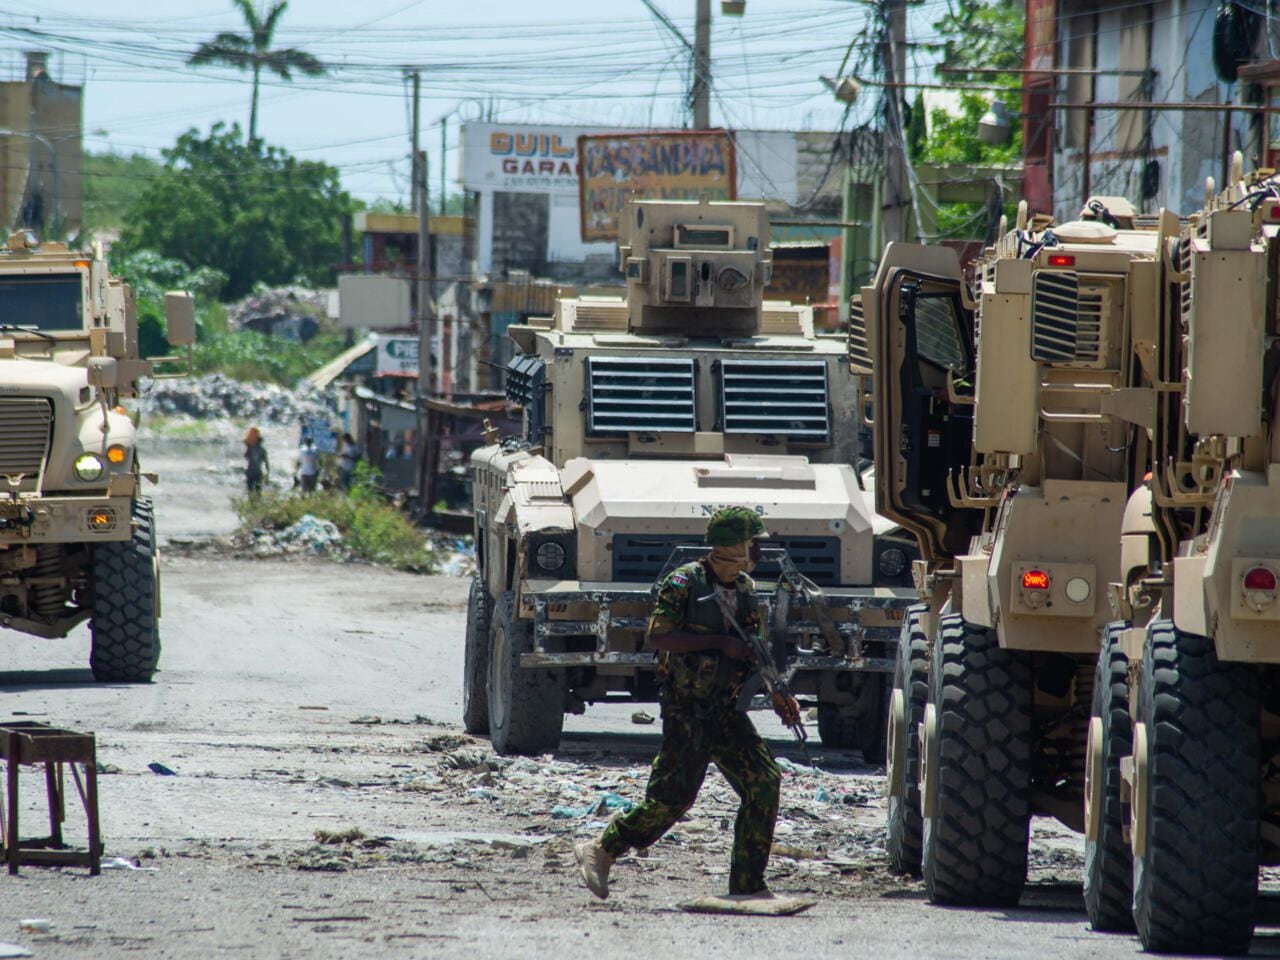 En una misión conjunta entre Naciones Unidas y el gobierno de Kenia, un grupo de policías kenianos llegó a Puerto Príncipe para intentar controlar a las pandillas. Foto: Clarens Siffroy/AFP/Archivos